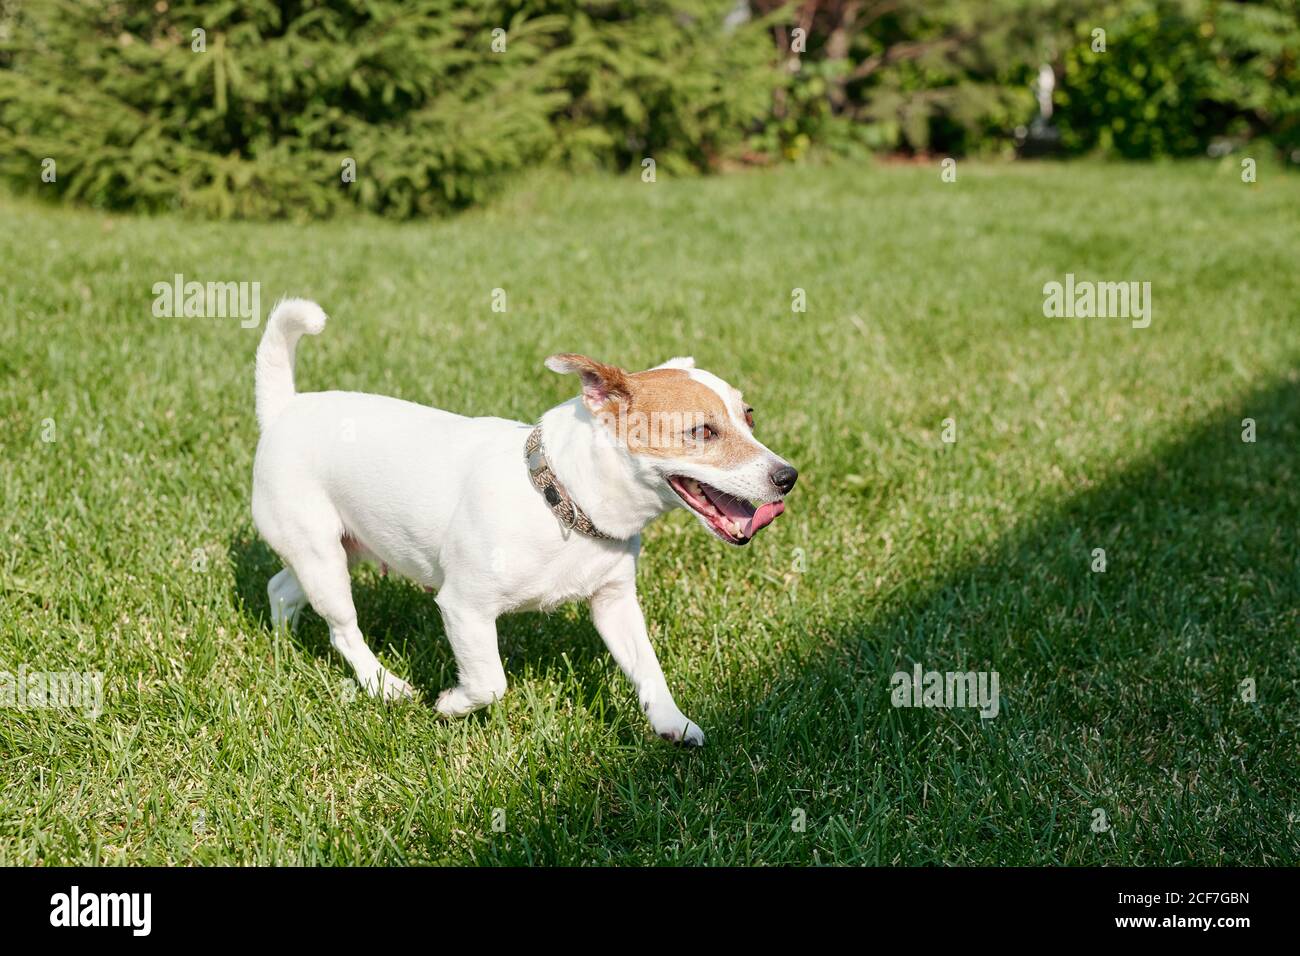 Carino cane che corre con la lingua fuori lungo il prato del parco il giorno d'estate, copy space Foto Stock